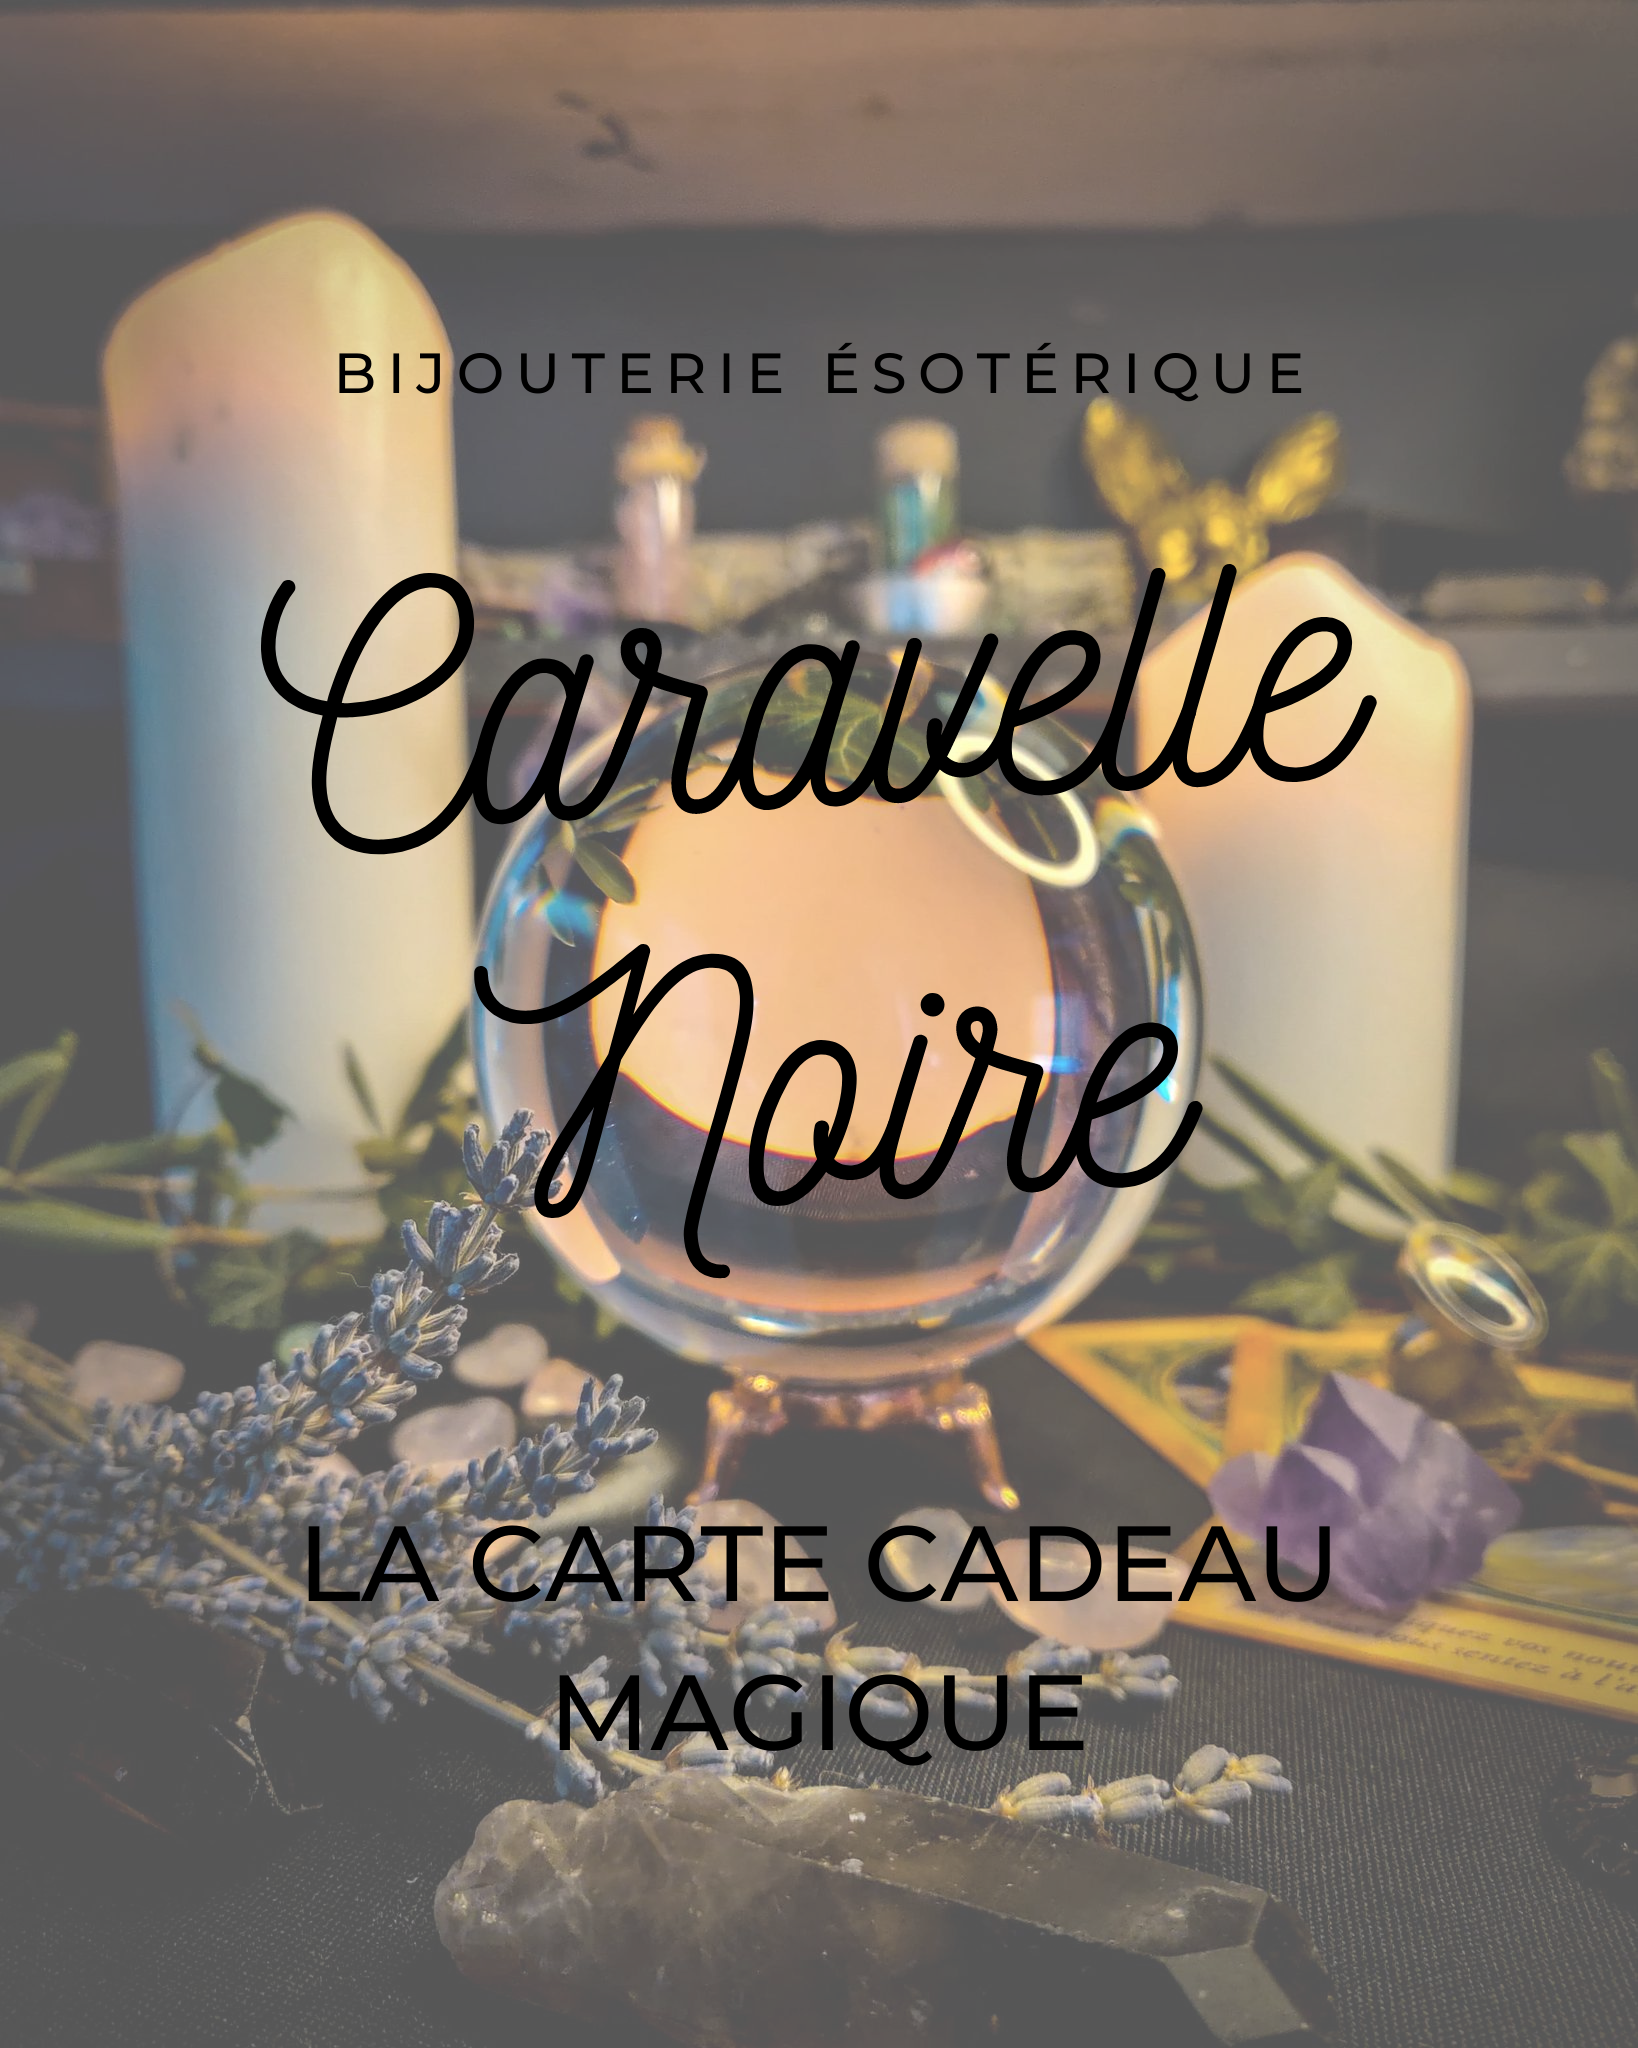 Carte Cadeau Magique - Caravelle Noire - Bijoux Esotériques et Païens